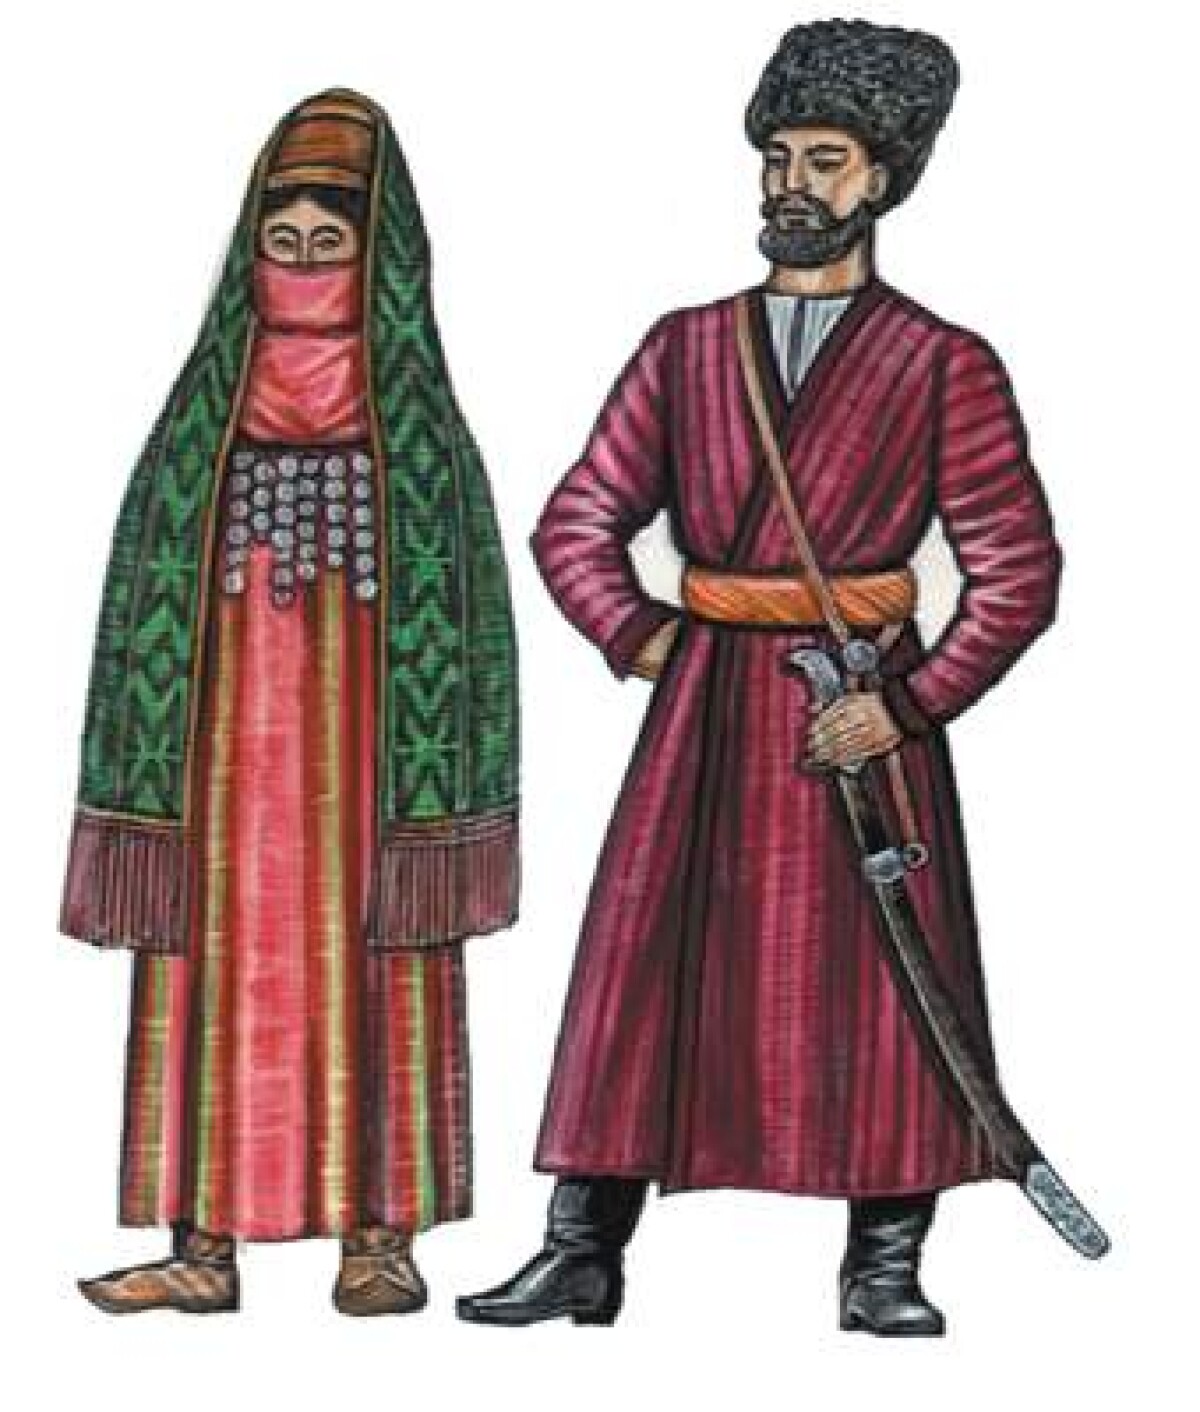 Национальный костюм туркменов